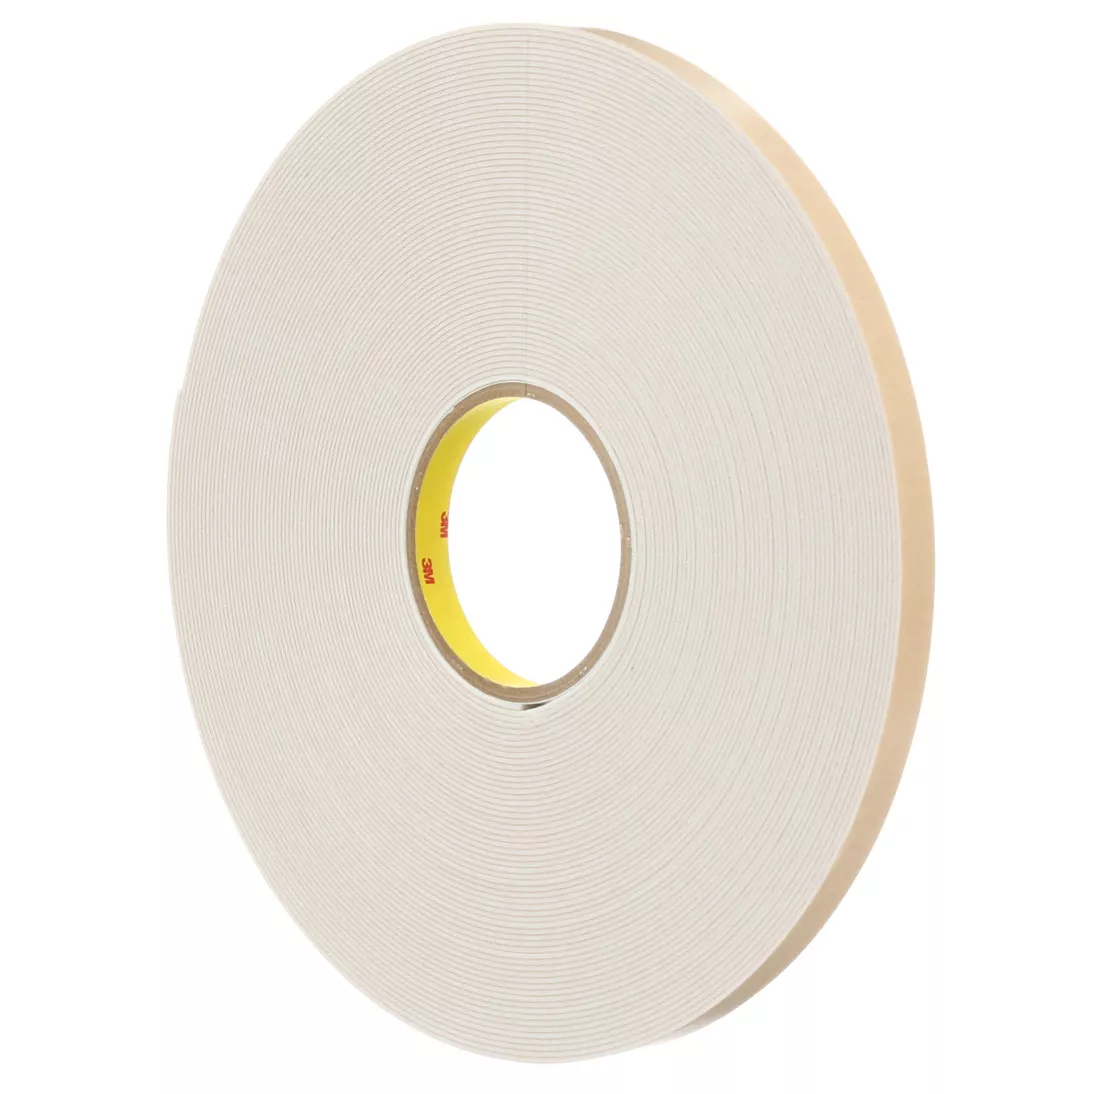 3M™ Double Coated Polyethylene Foam Tape 4496W, White, 54 in x 36 yd, 62
mil, 1 roll per case